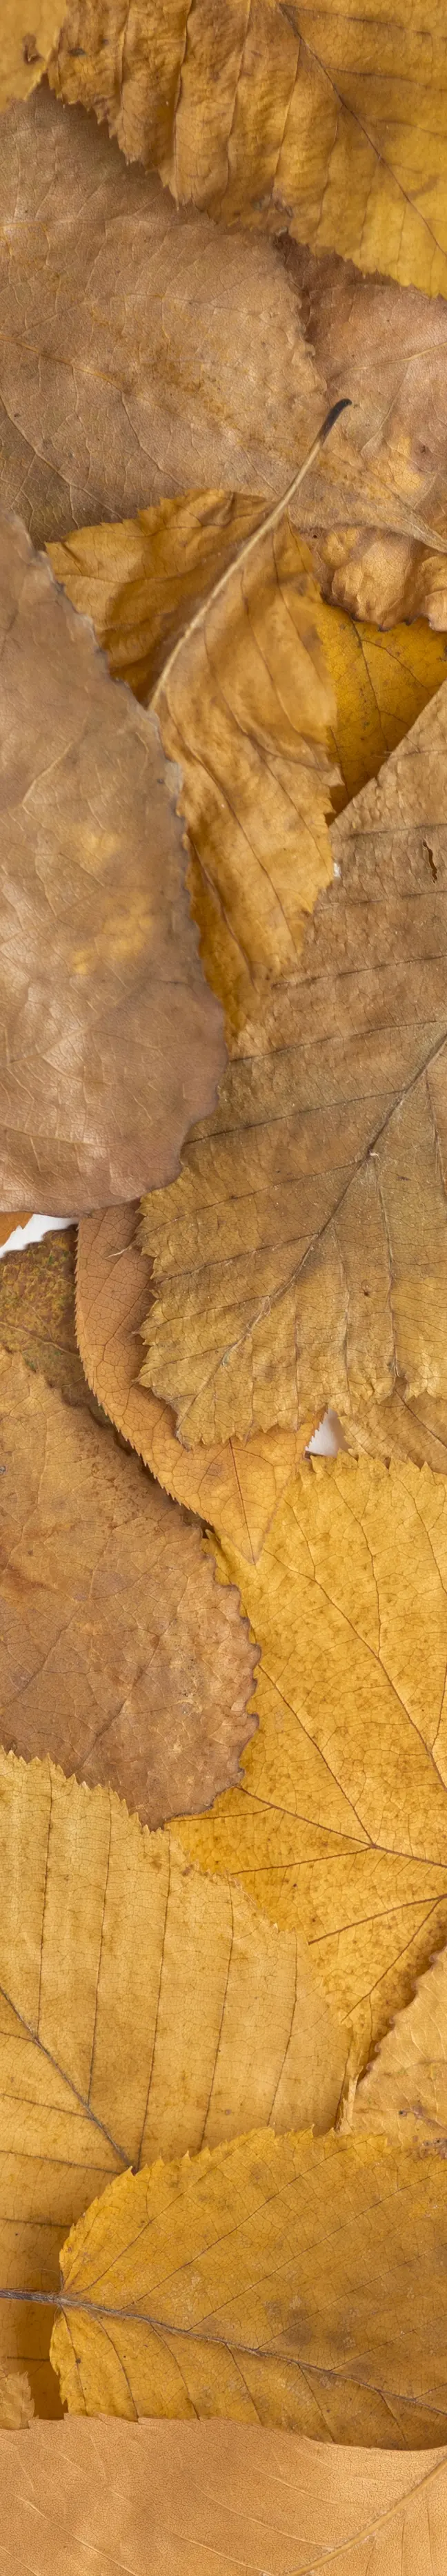 Photo de feuilles mortes pour illustrer notre service de soufflage et ramassage de feuilles mortes